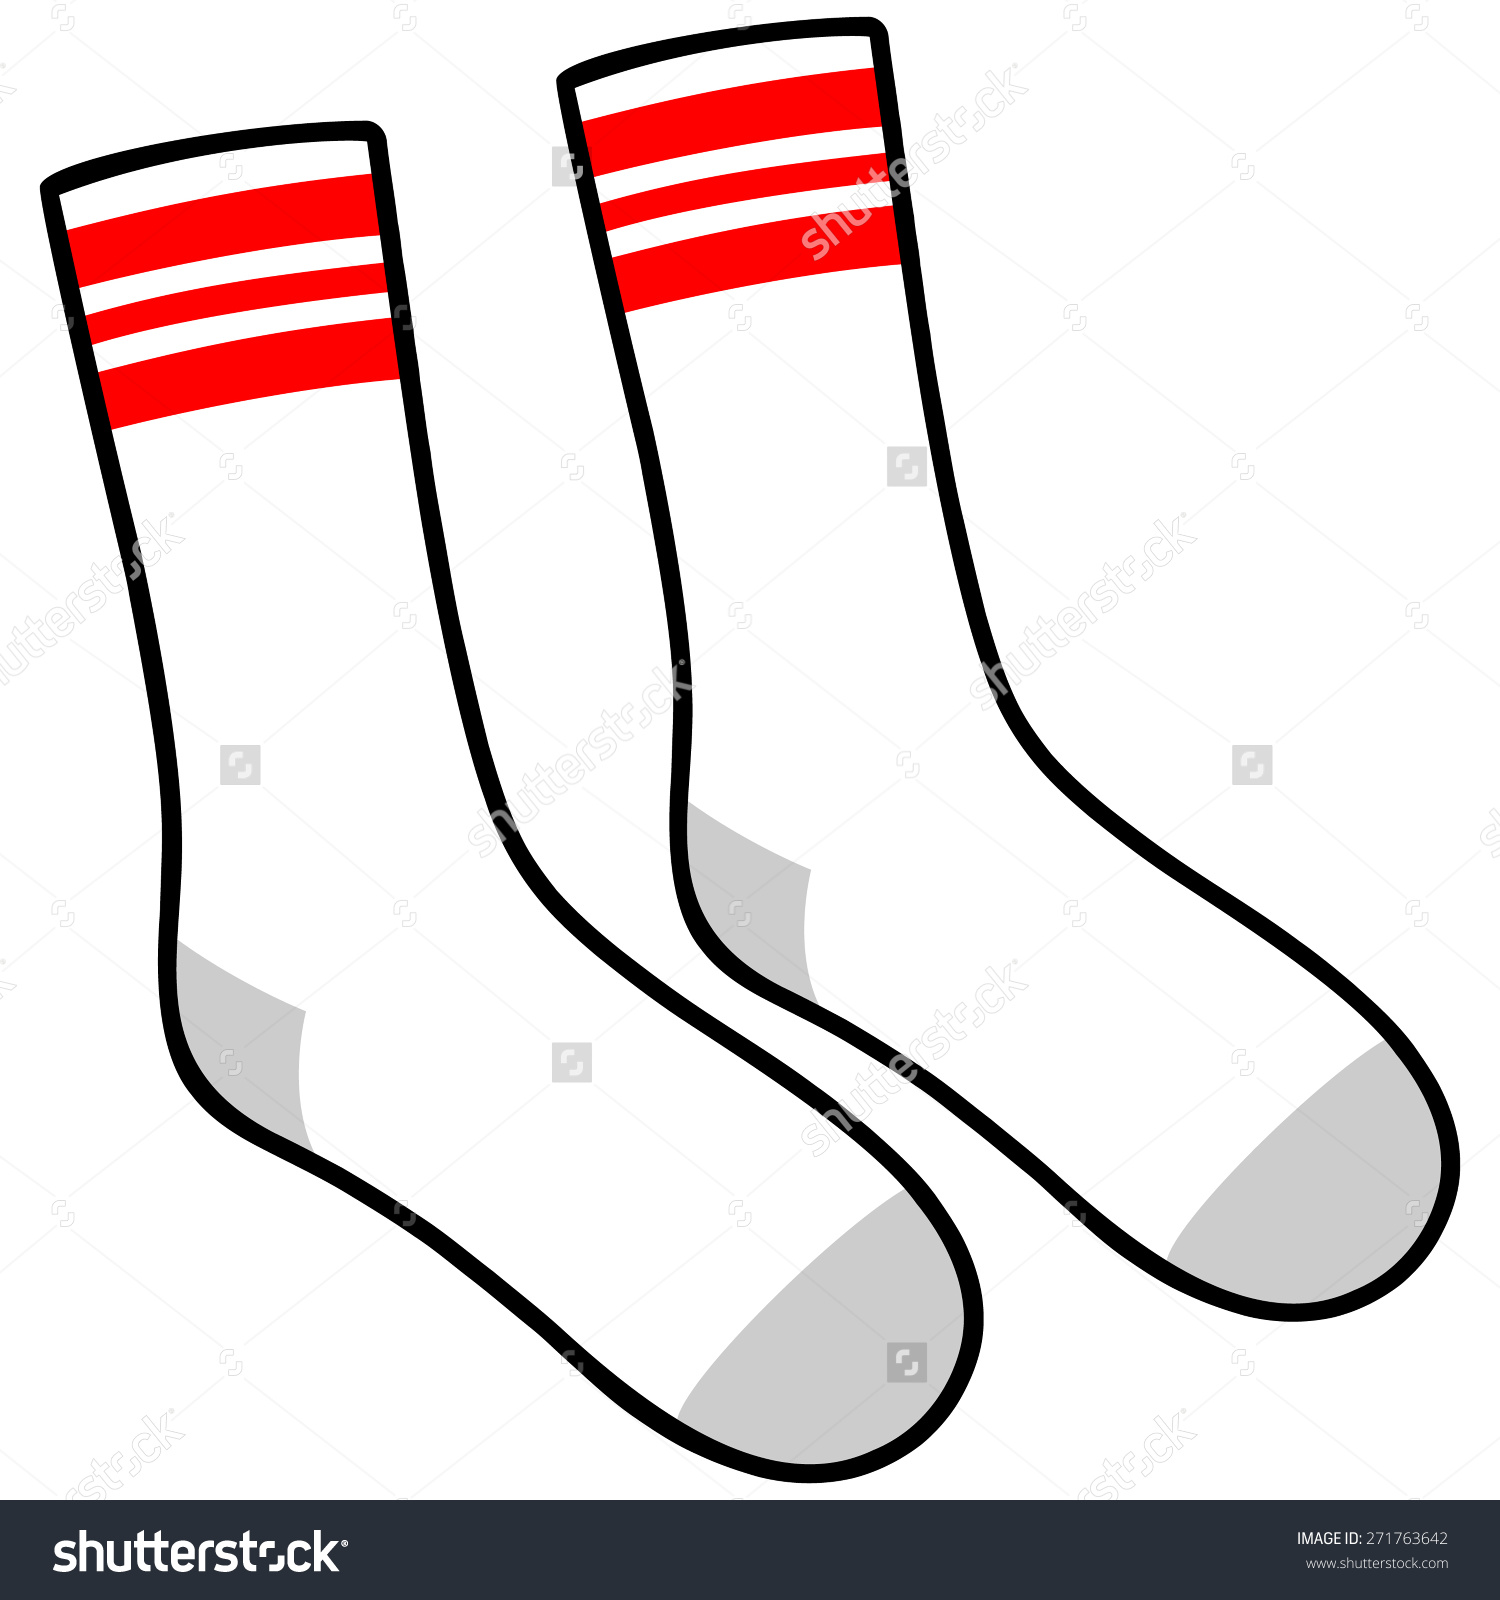 clipart socks sport sock